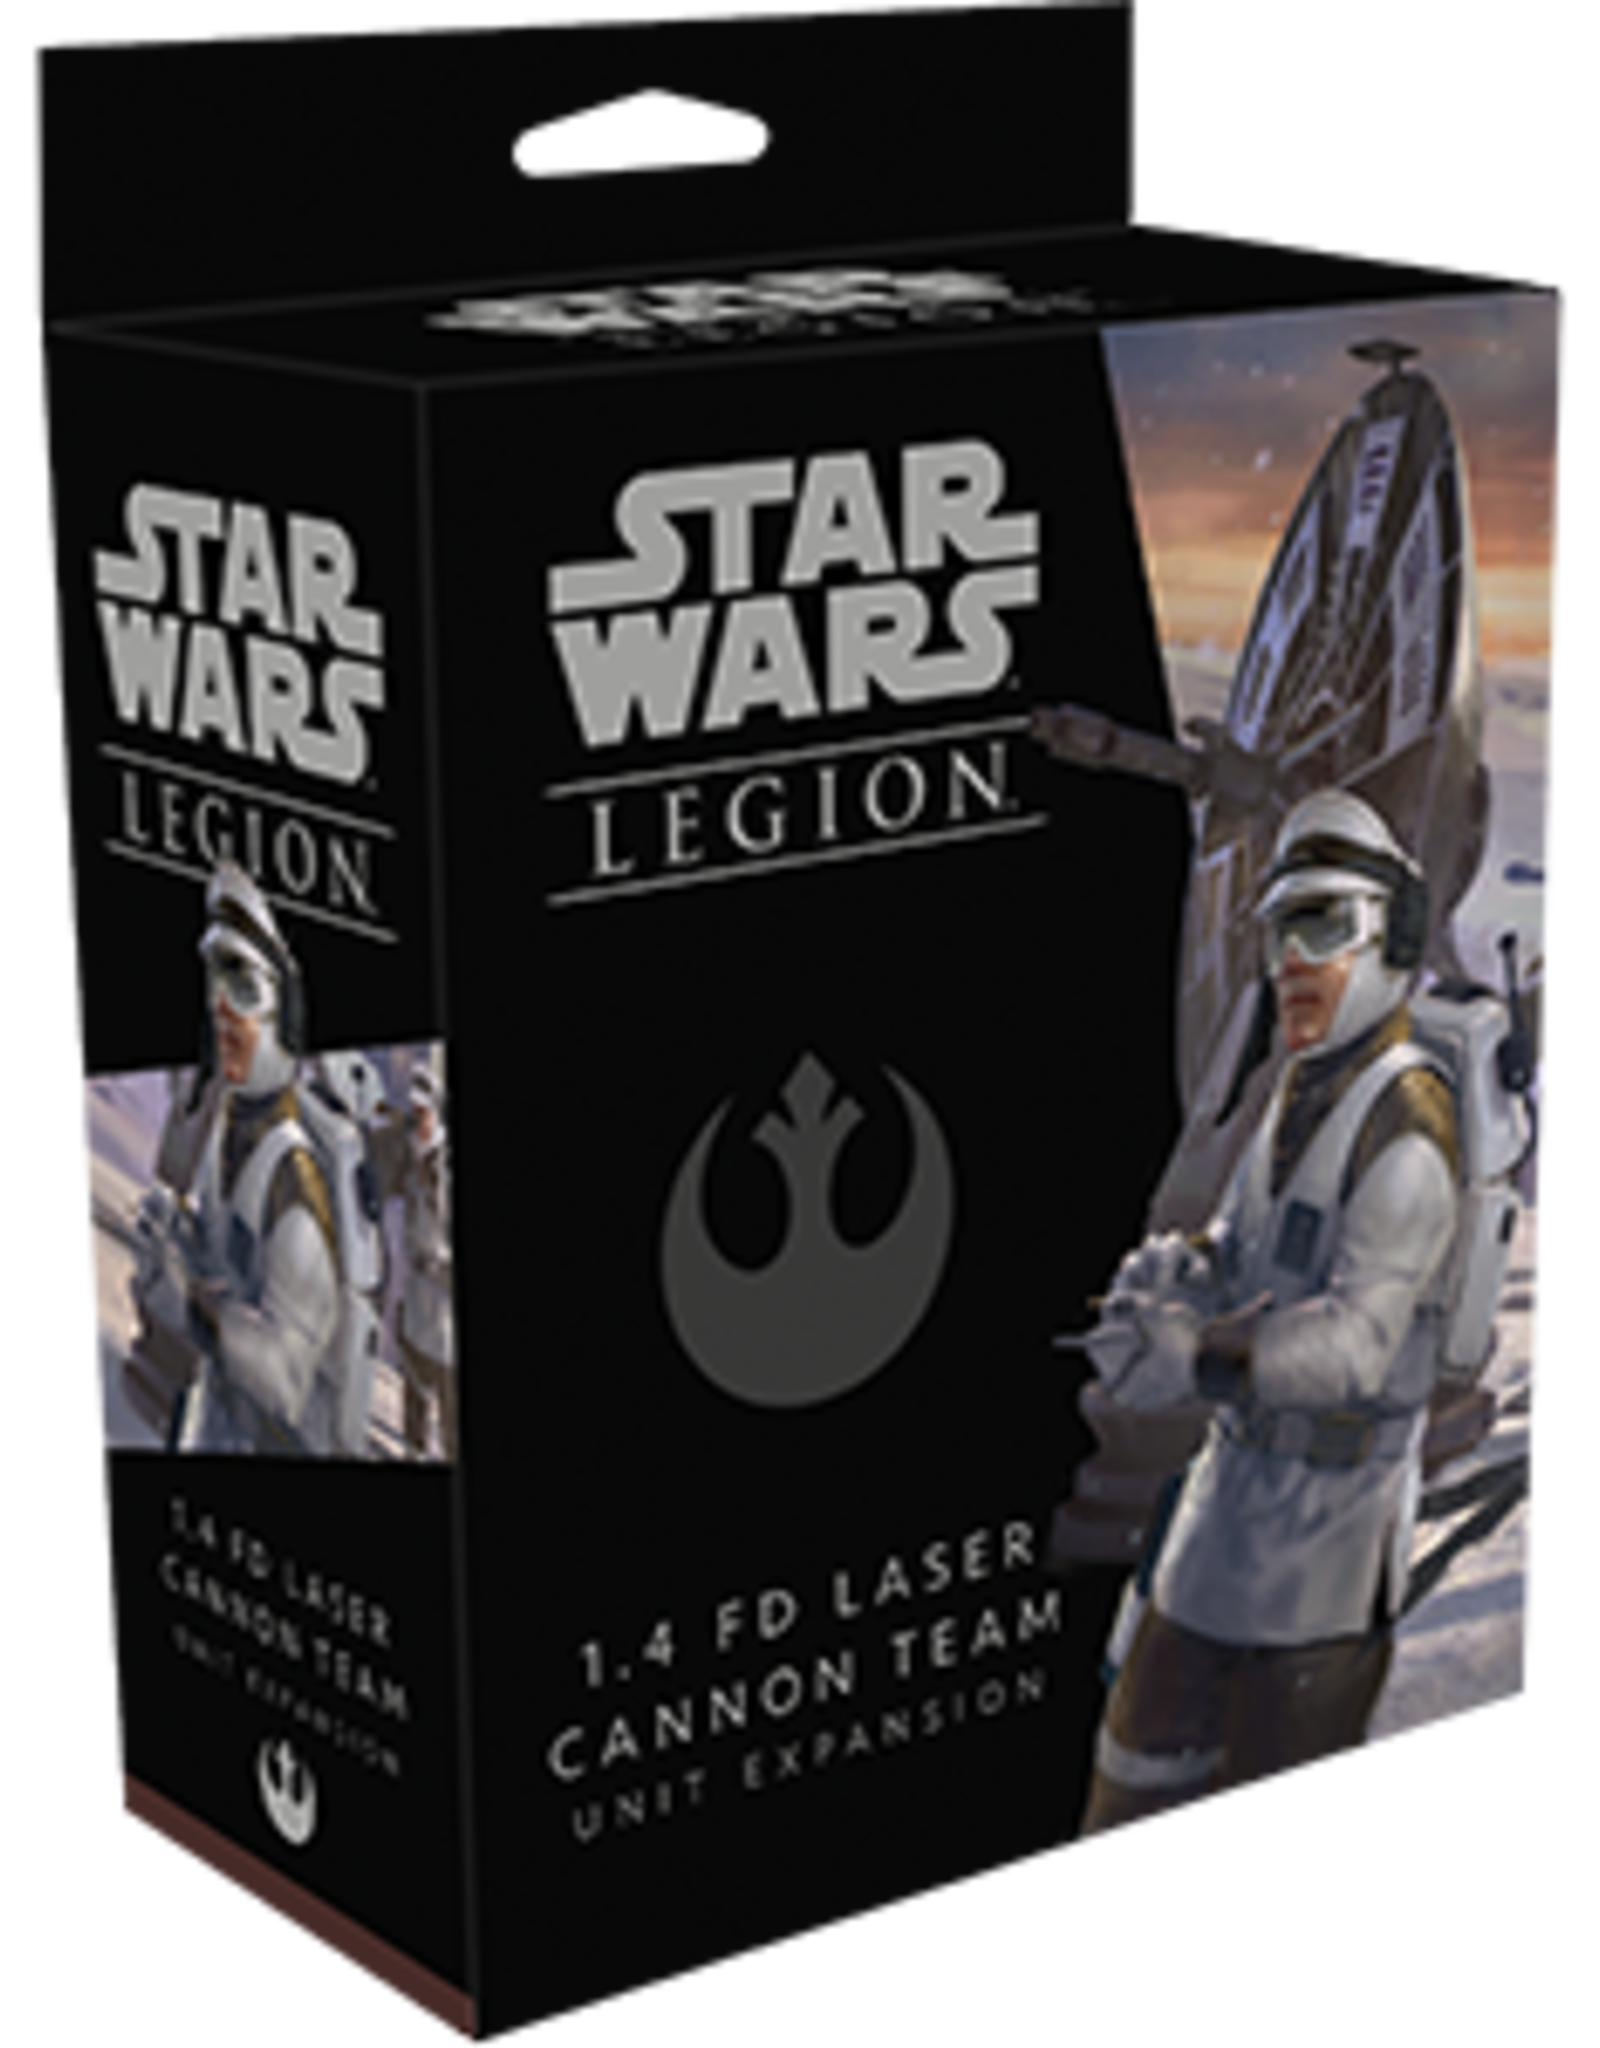 FFG Star Wars Legion:  1.4 FD Laser Cannon Team